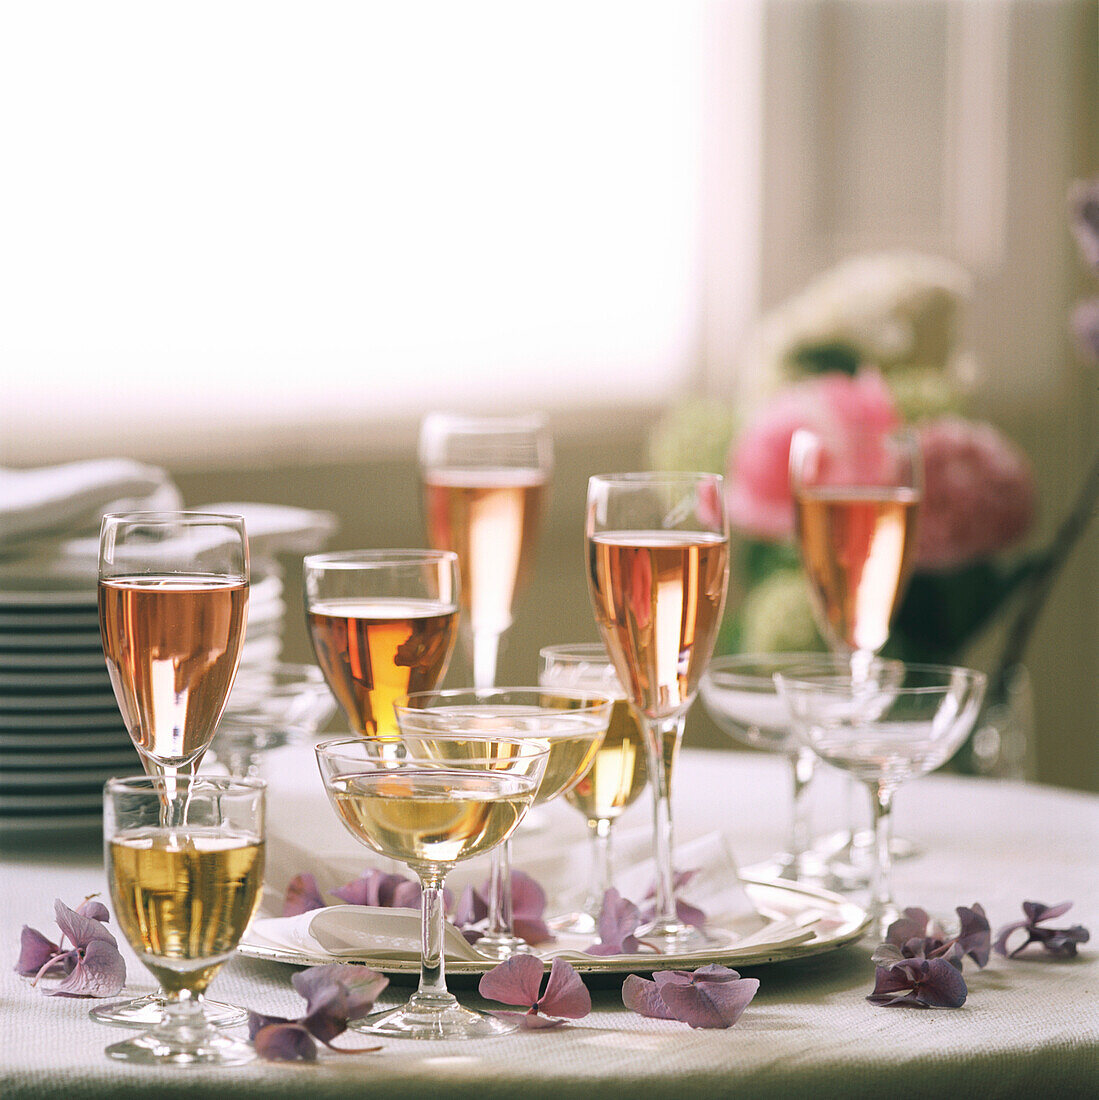 Tischplatte mit gefüllten Weingläsern, Tellern und Blumendekoration